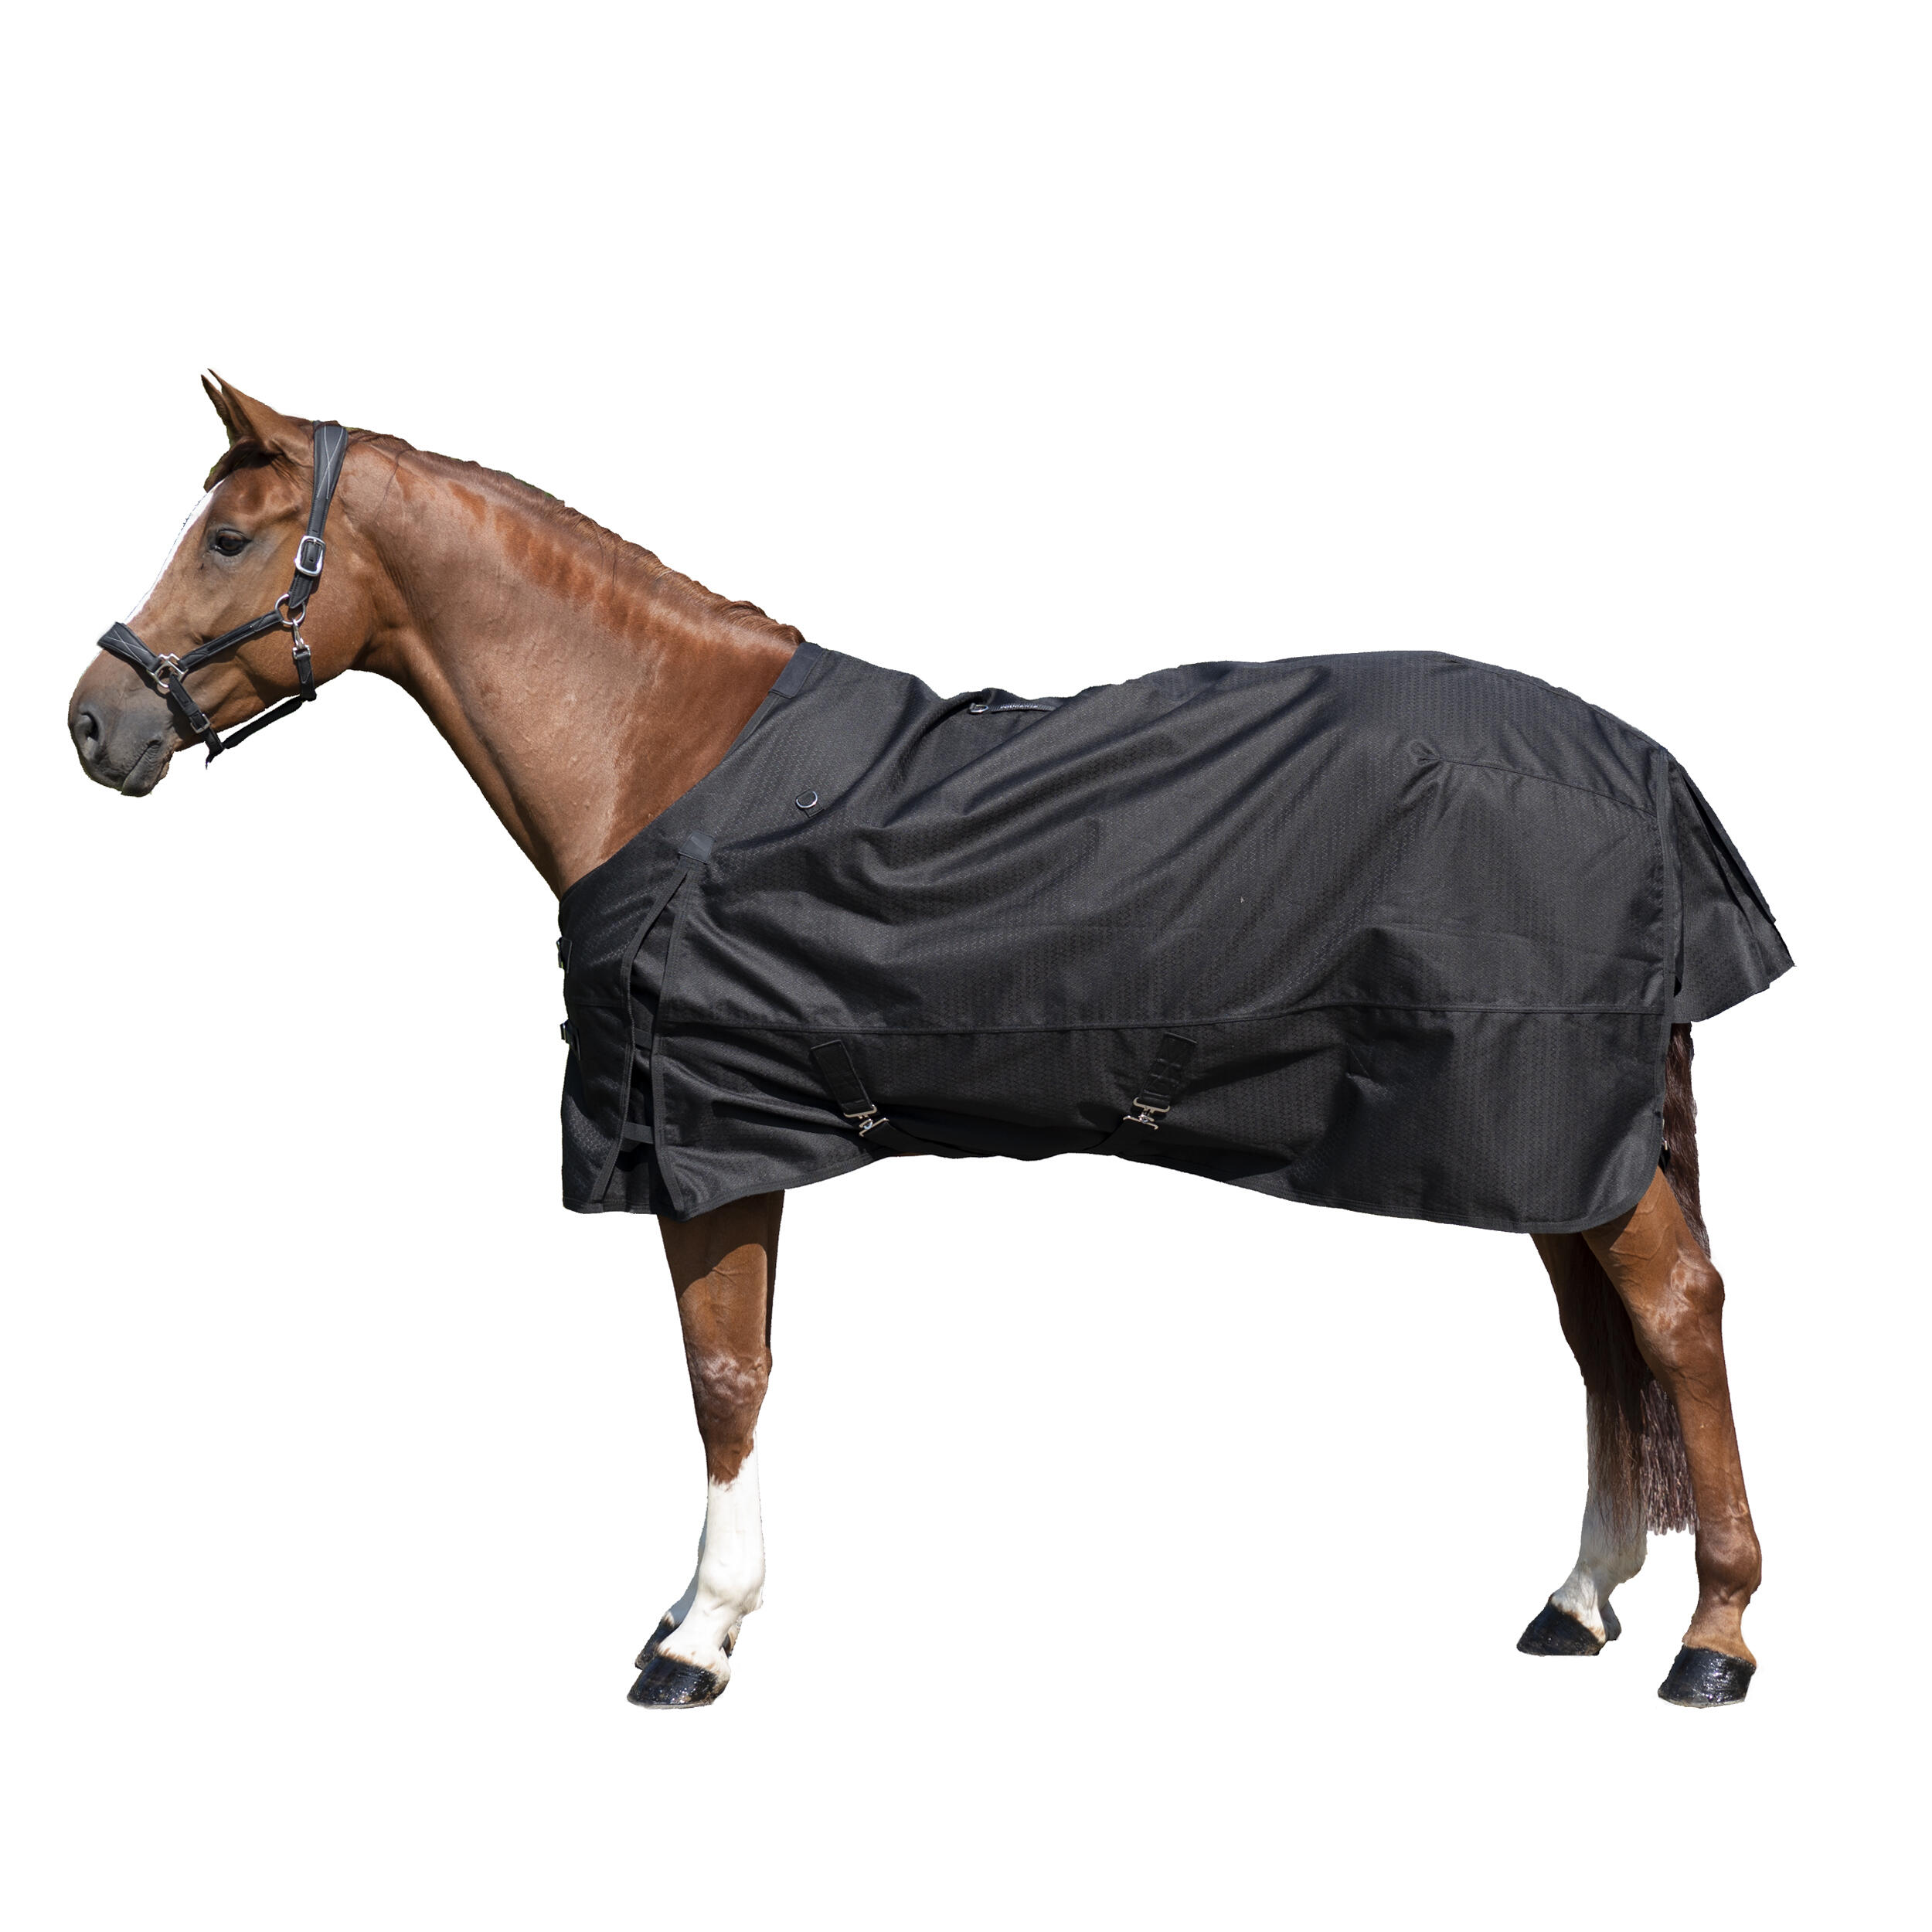 Pătură impermeabilă pentru exterior echitație ALLWEATHER 1000D negru cai FOUGANZA decathlon.ro